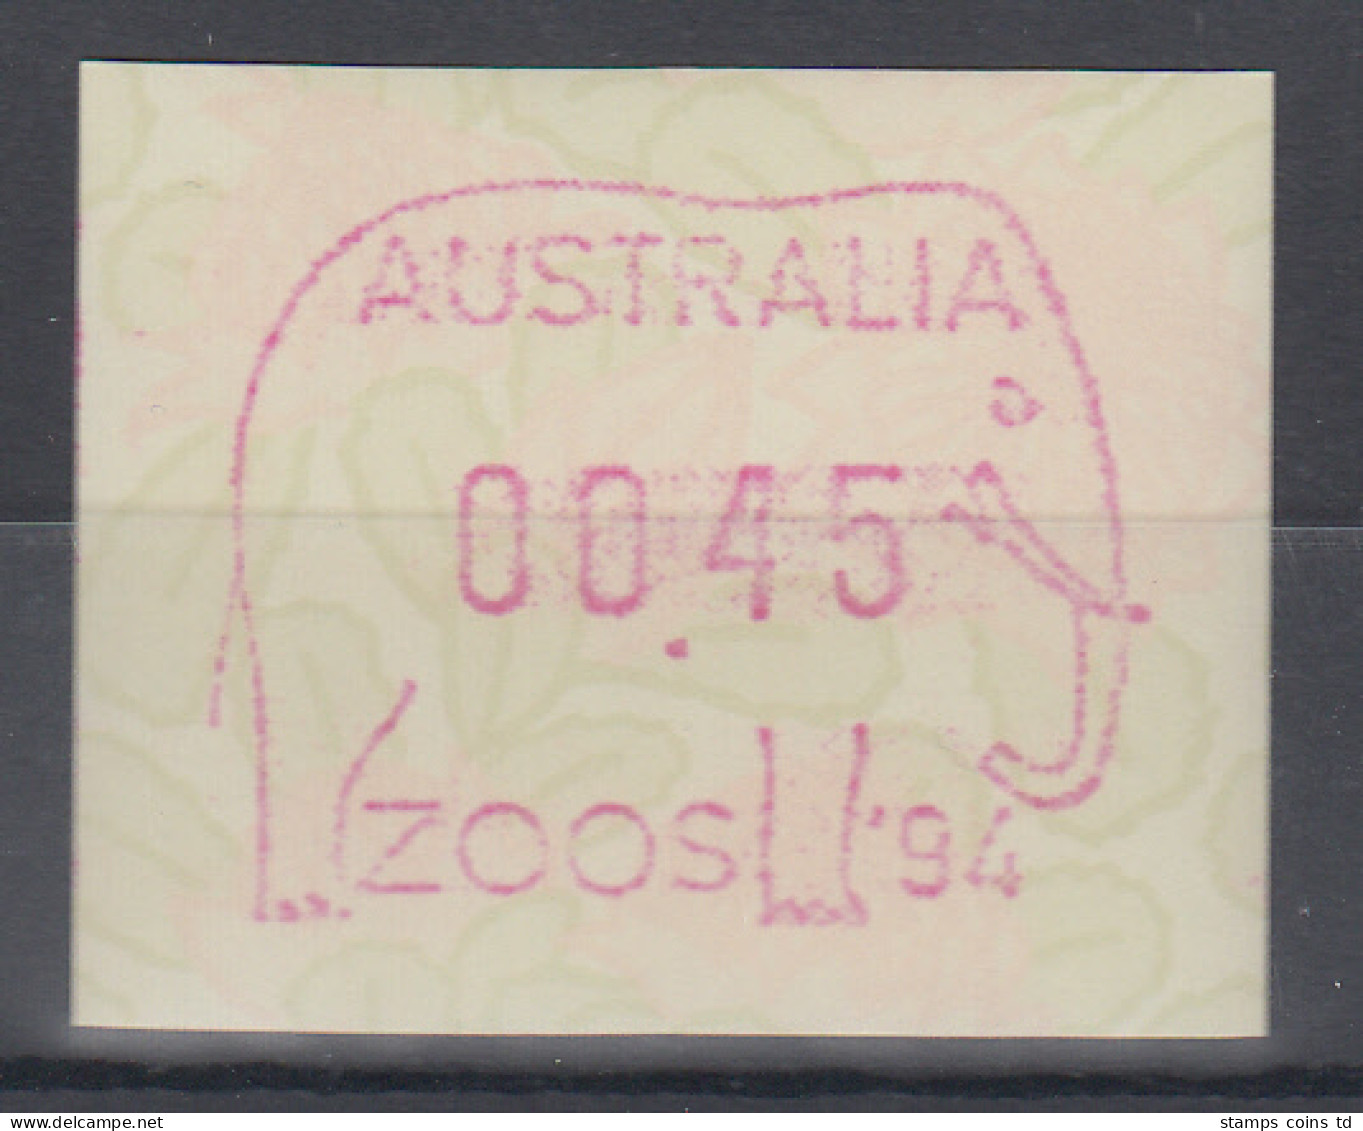 Australien Frama-ATM Waratah-Blume Sonderausgabe ZOOS `94 Elefant ** - Machine Labels [ATM]